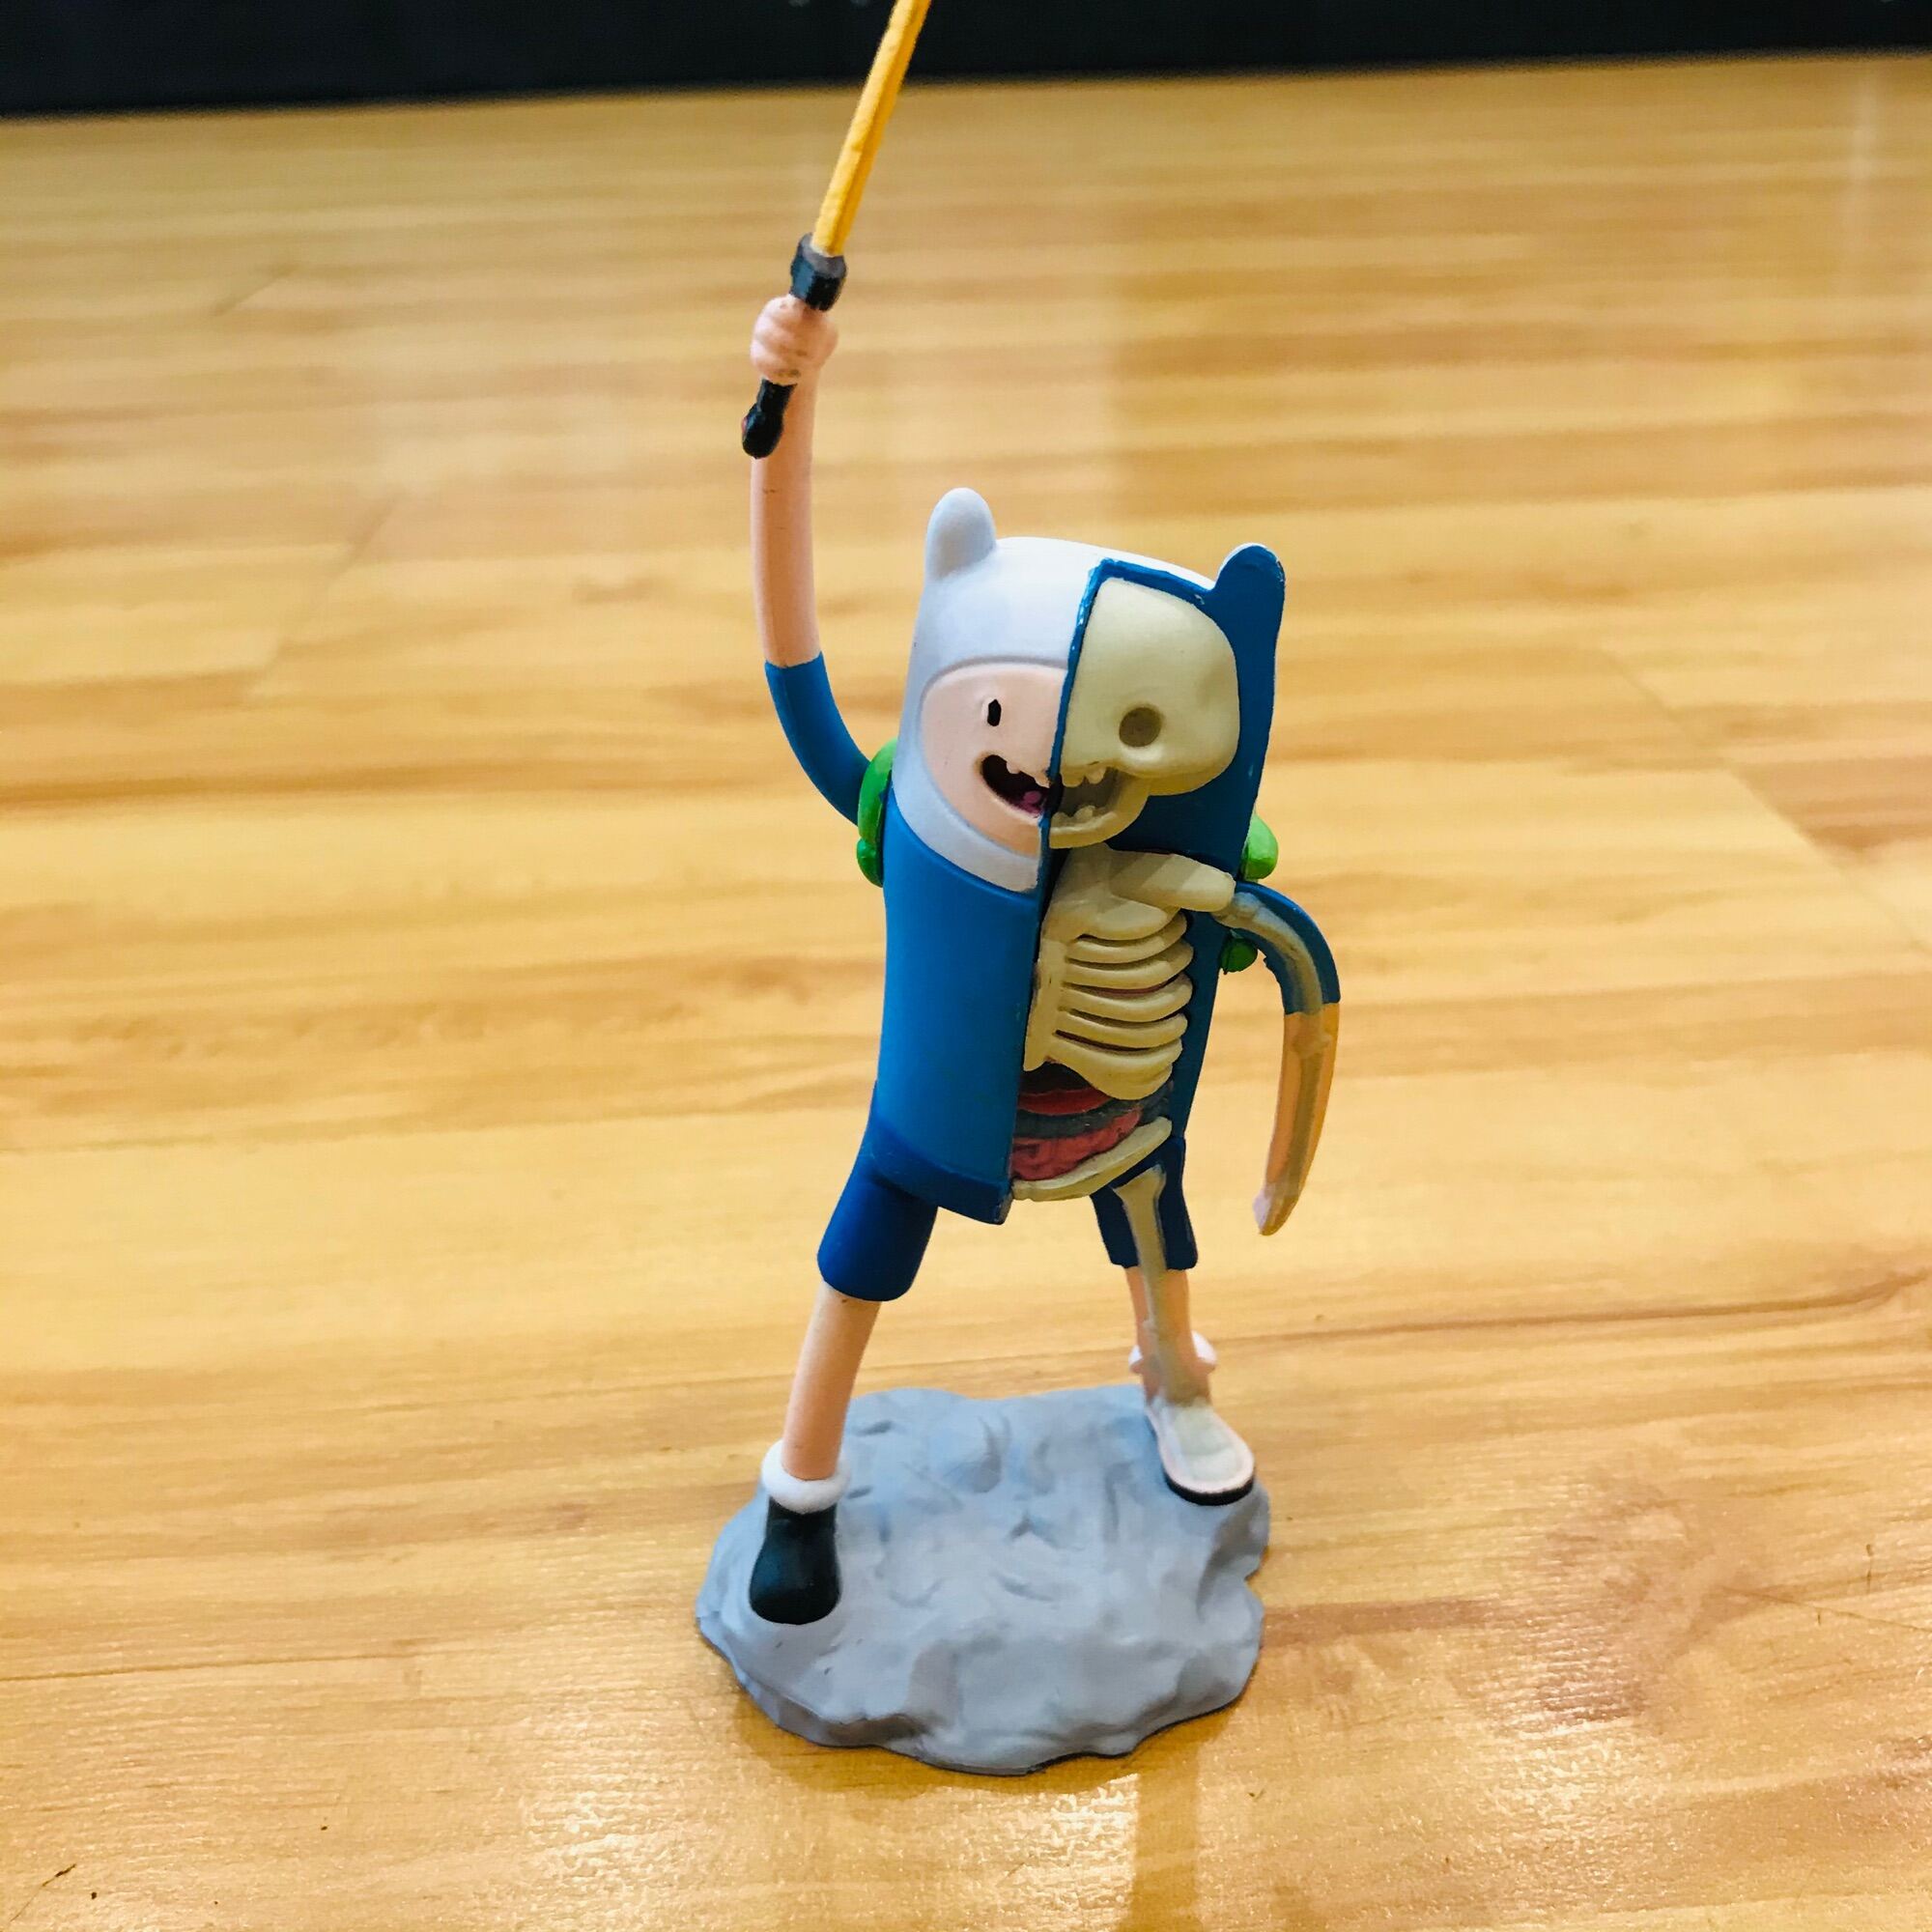 Finn Adventure Time Mcdonalds Đồ Ăn Hạnh Phúc Hình ảnh Sẵn có  Tải xuống Hình  ảnh Ngay bây giờ  Chủ nghĩa tiêu dùng Cuộc phiêu lưu  Khái niệm Cắt ra   iStock